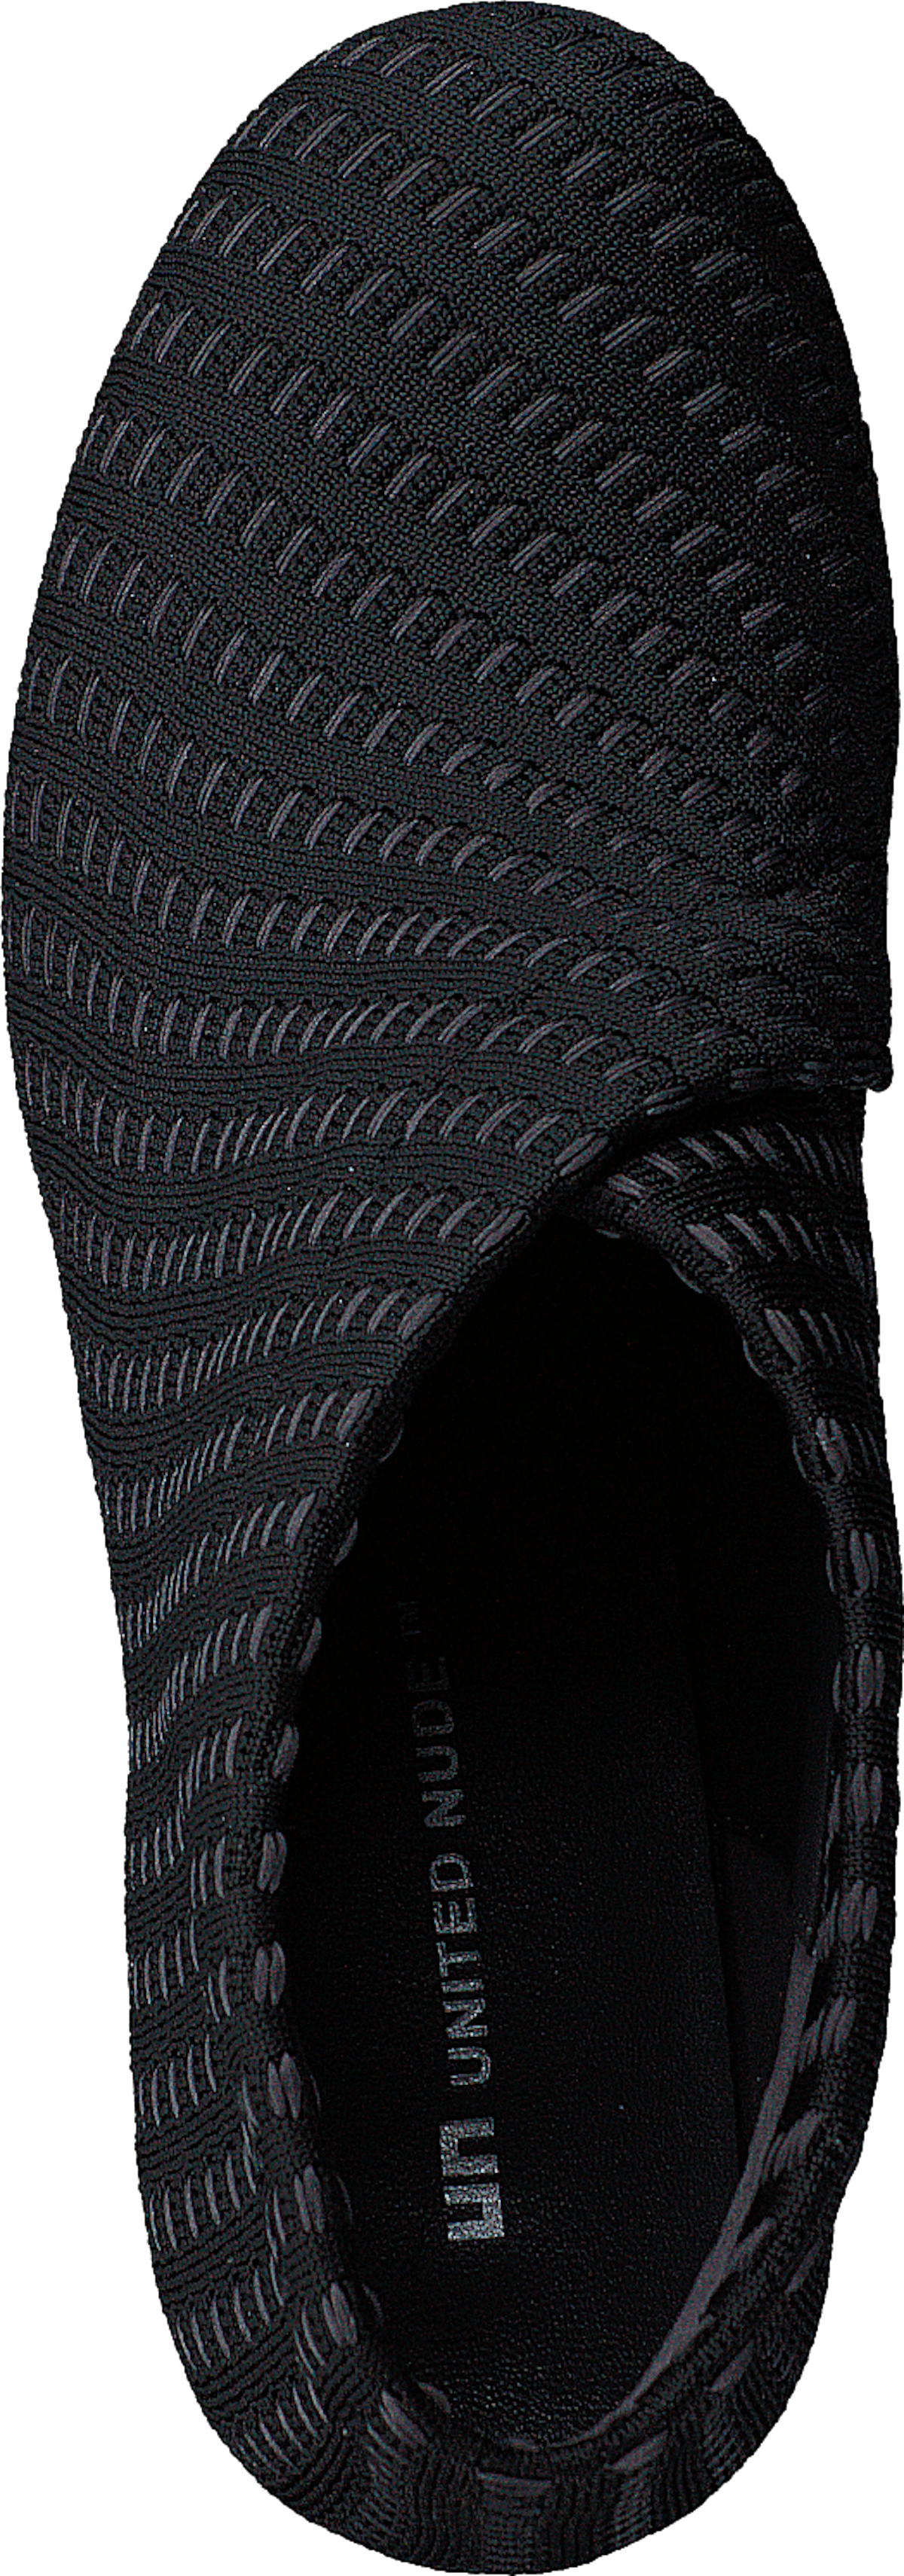 Fold Mid Charcoal Interknit